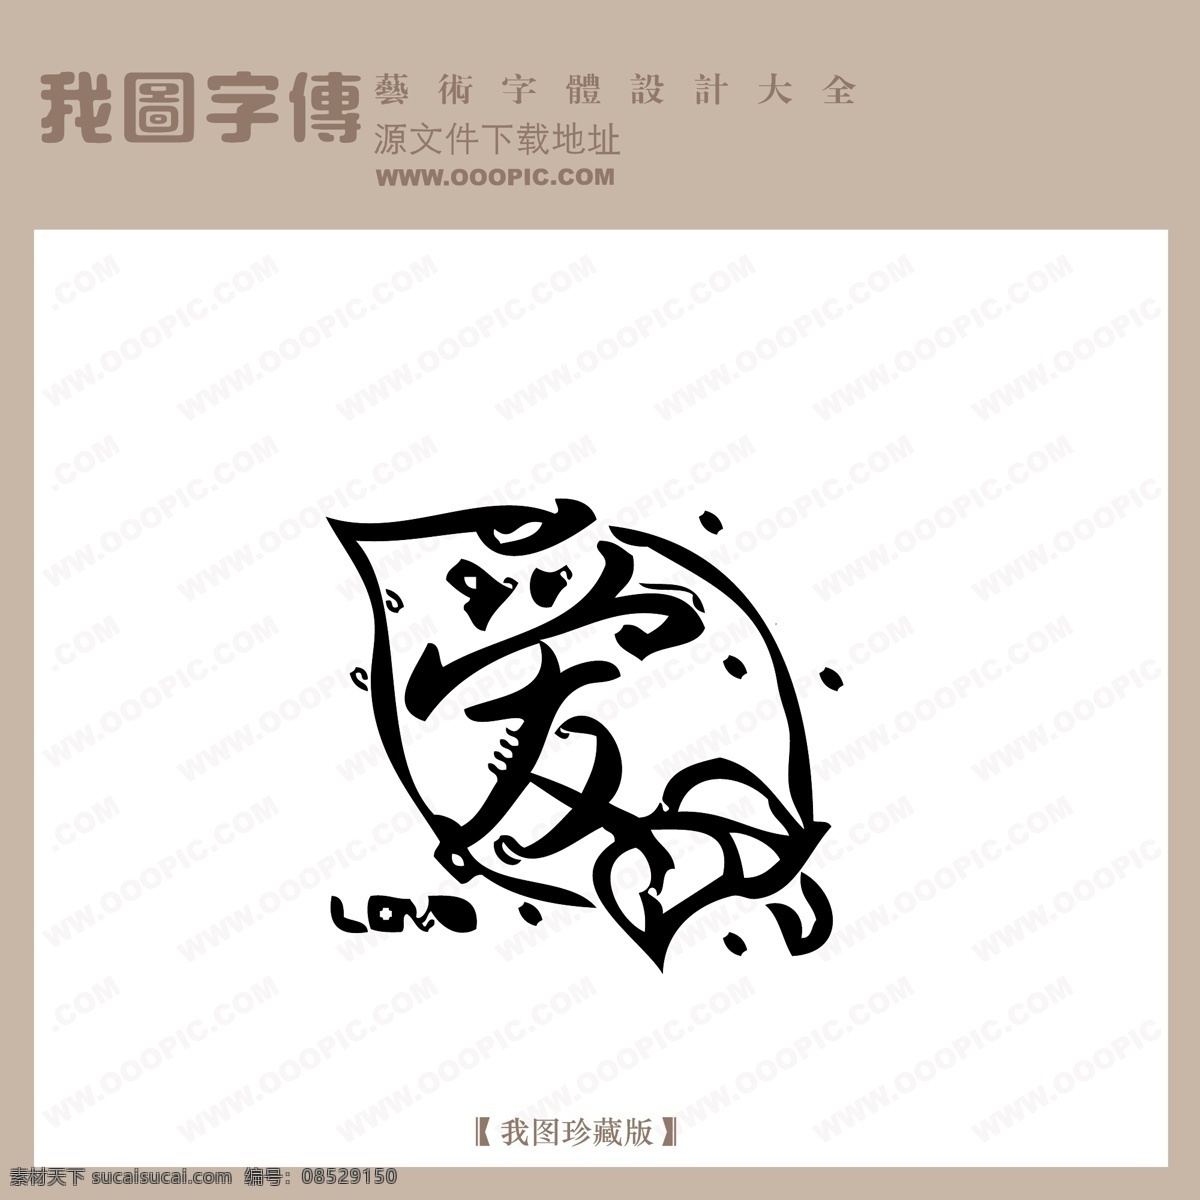 爱 中文 现代艺术 字 创意 美工 艺术 中国字体下载 矢量图